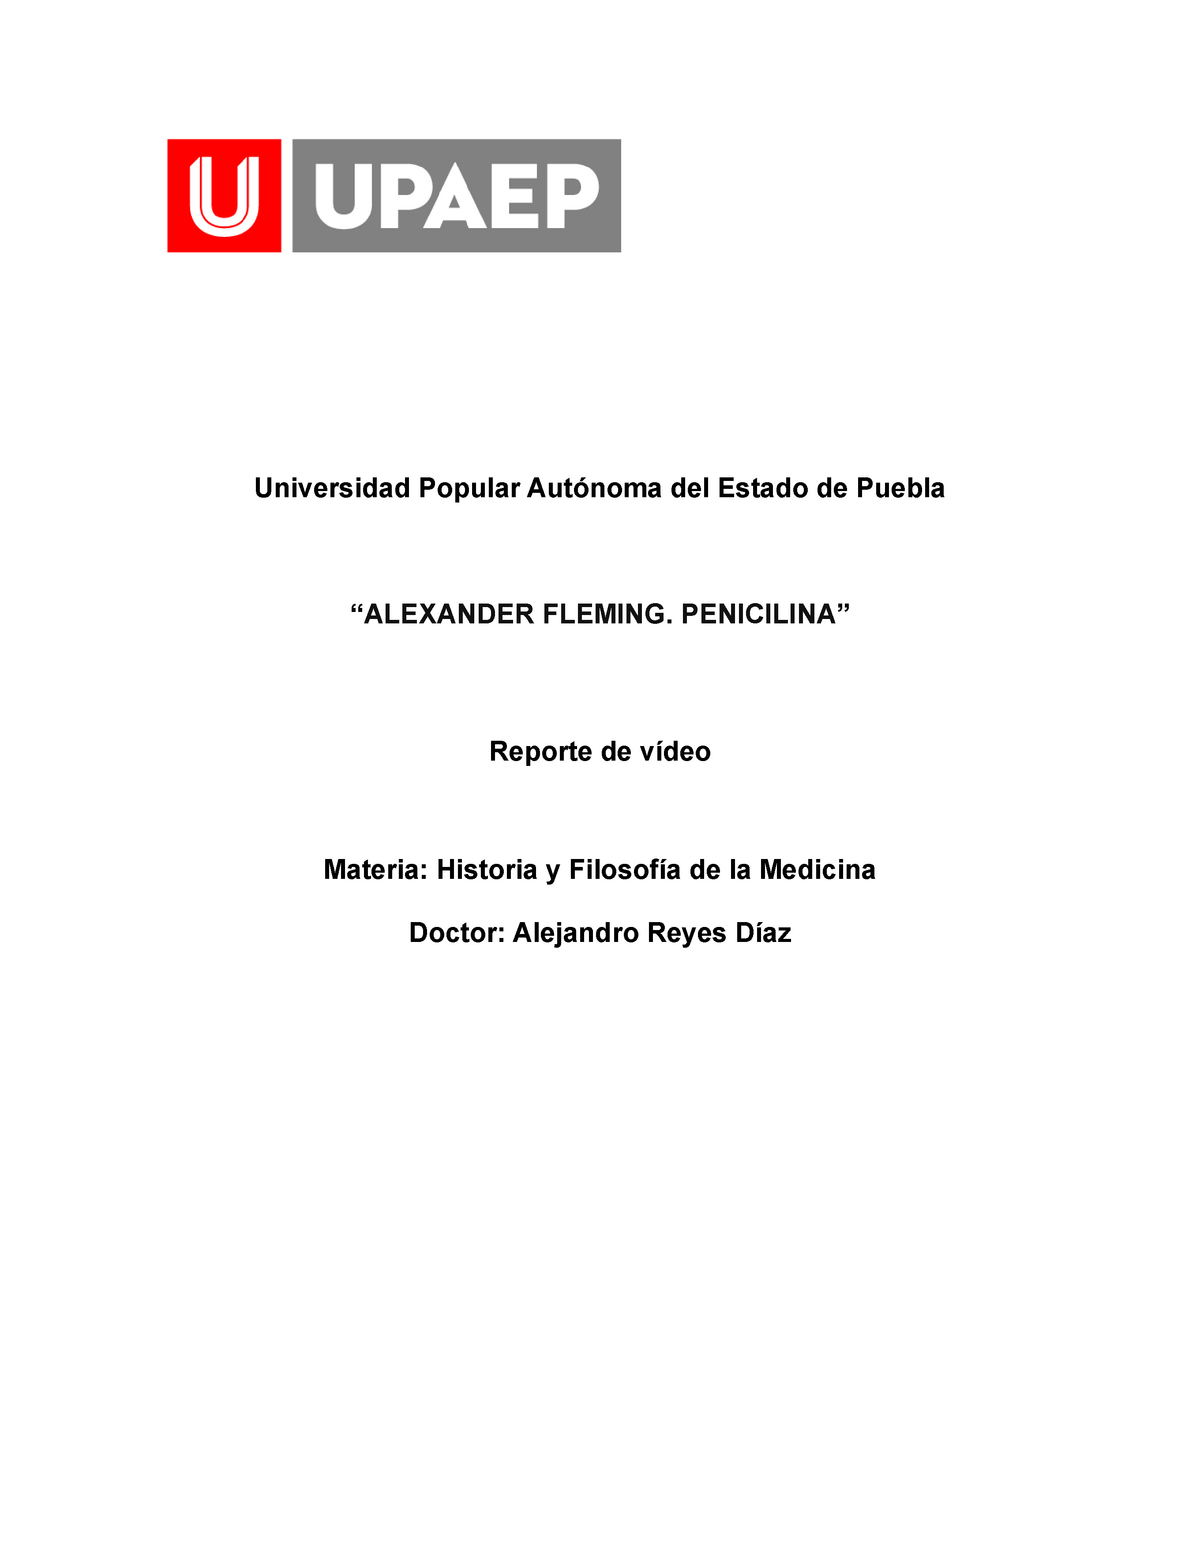 Reporte penicilina - Universidad Popular Autónoma del Estado de Puebla “ALEXANDER  FLEMING. - Studocu